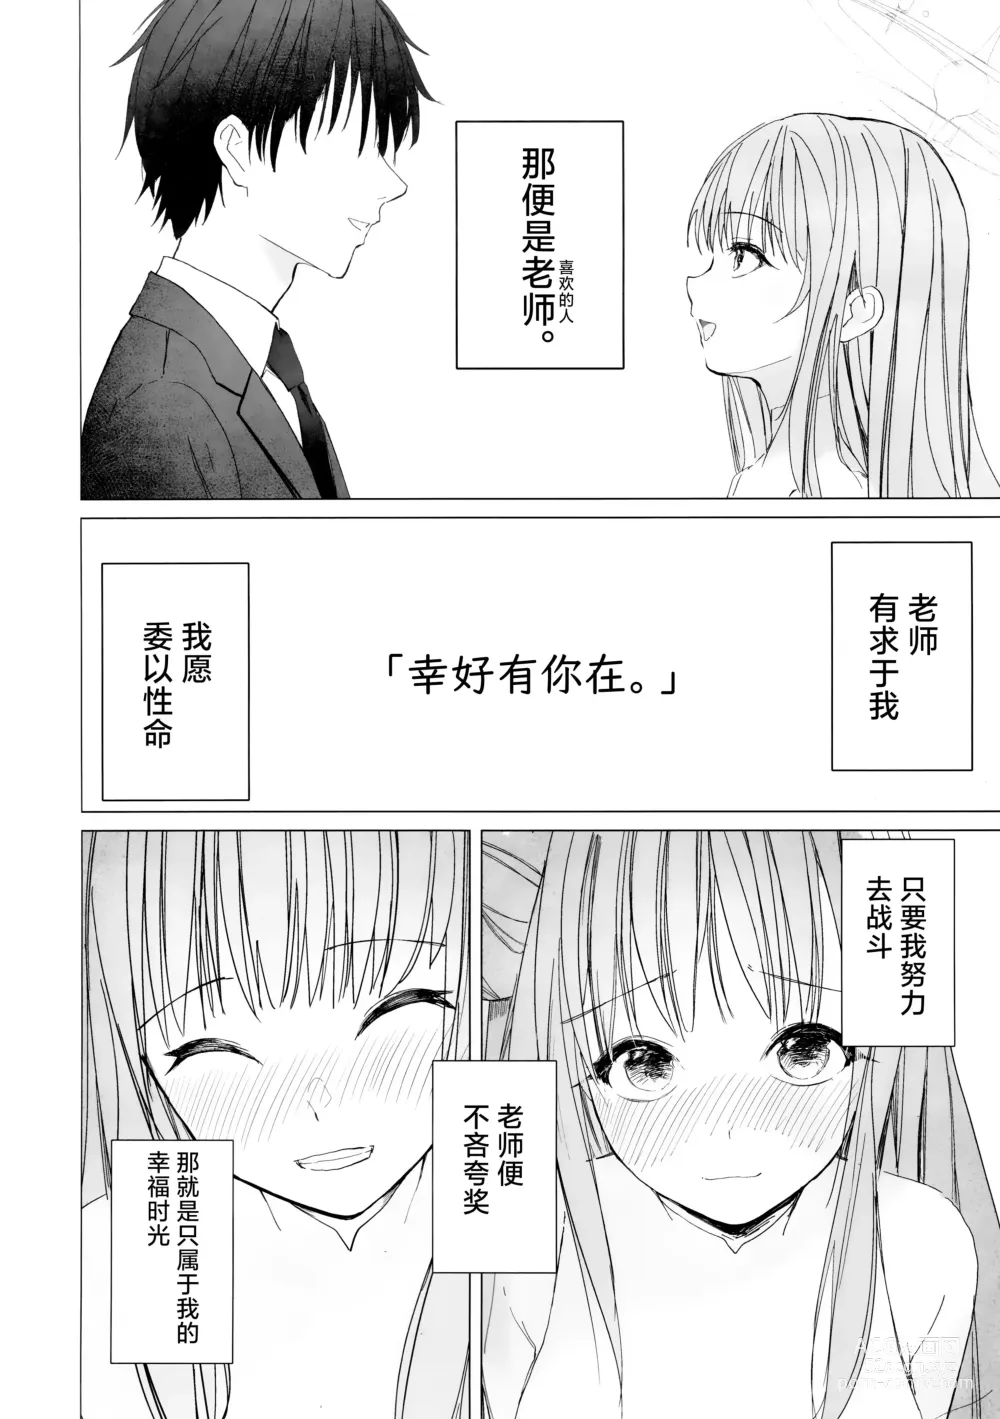 Page 6 of doujinshi 新约 挥发性的幸福